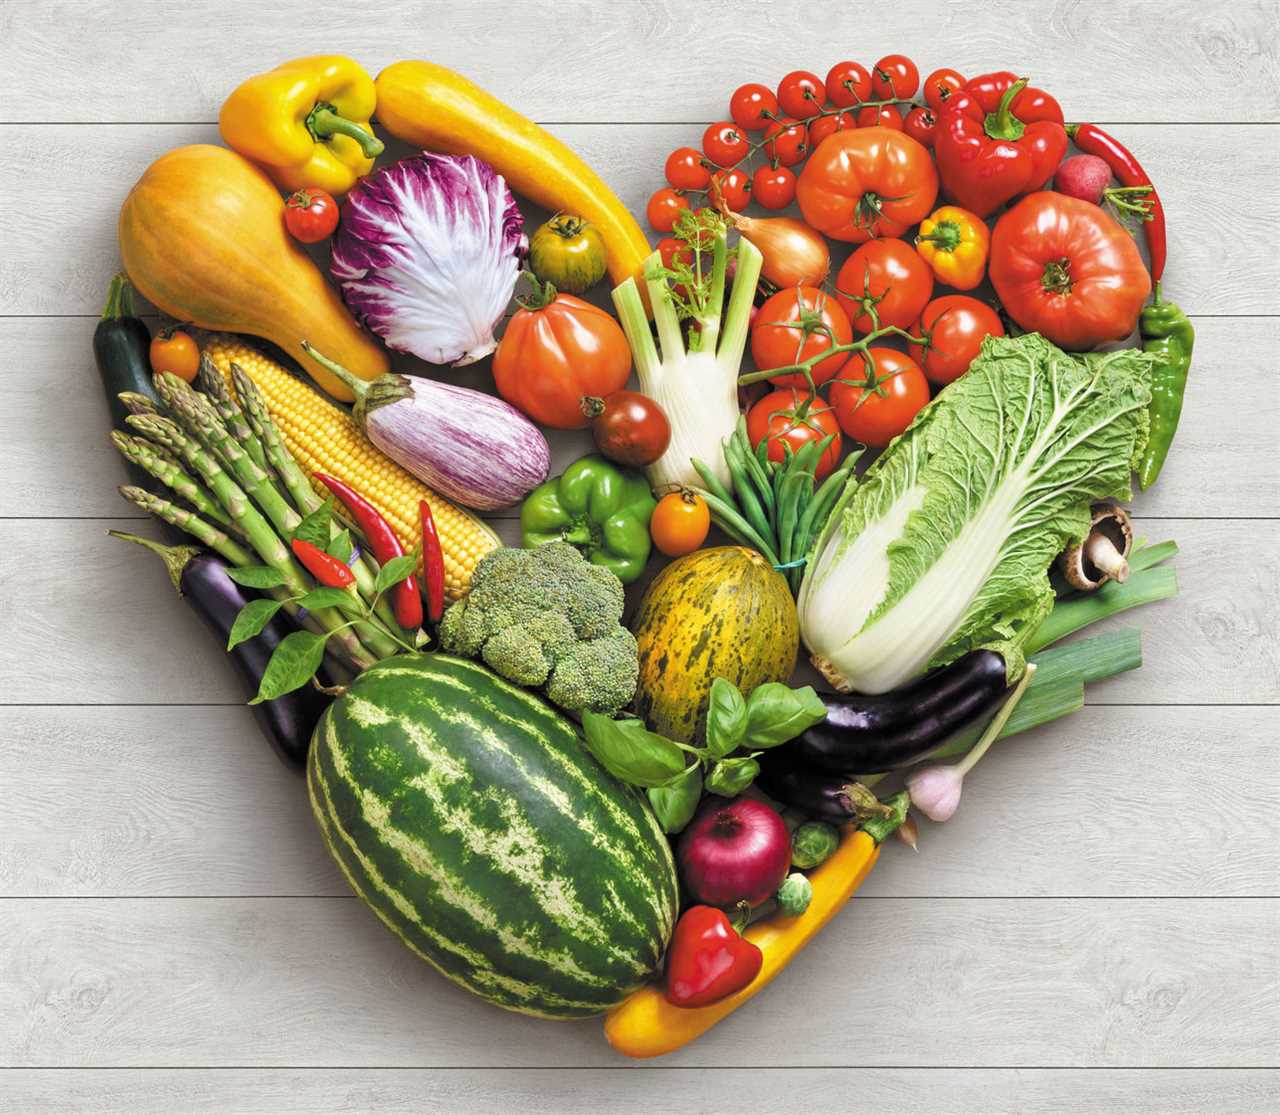 Plant-Based Diet for Your Heart | Dr. Robert Ostfeld